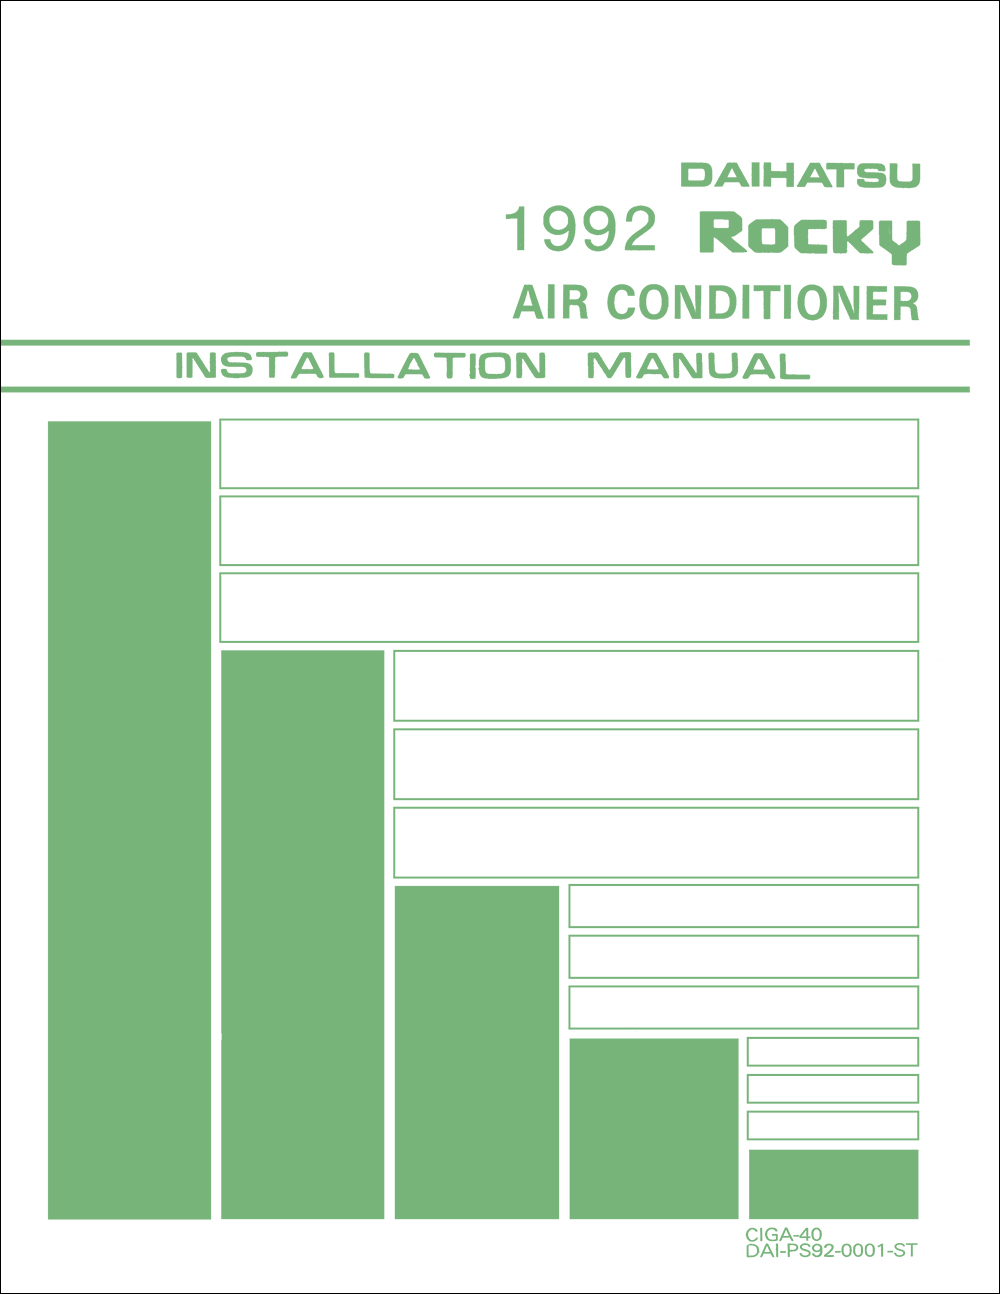 1992 Daihatsu Rocky Air Conditioner Installation Manual Reprint